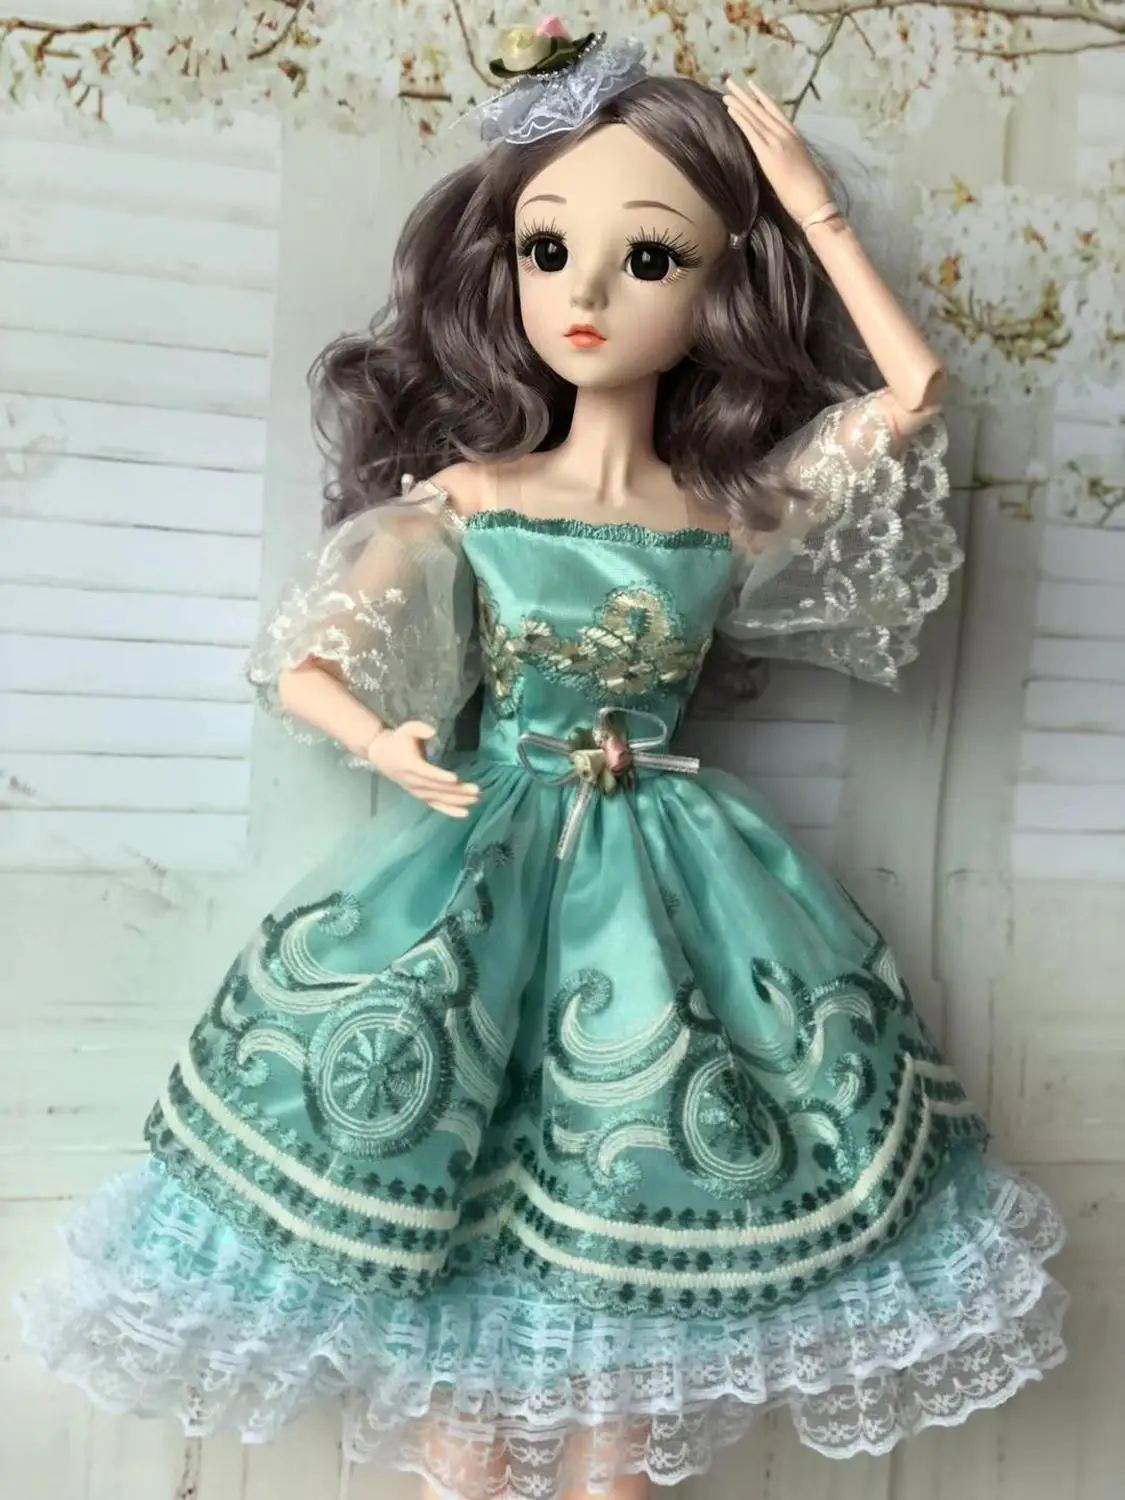 60 см Bjd кукла Модная девушка 20 подвижных суставов романтическая принцесса реалистичные детские куклы для девочек игрушки для детей подарки на день рождения - Цвет: 2